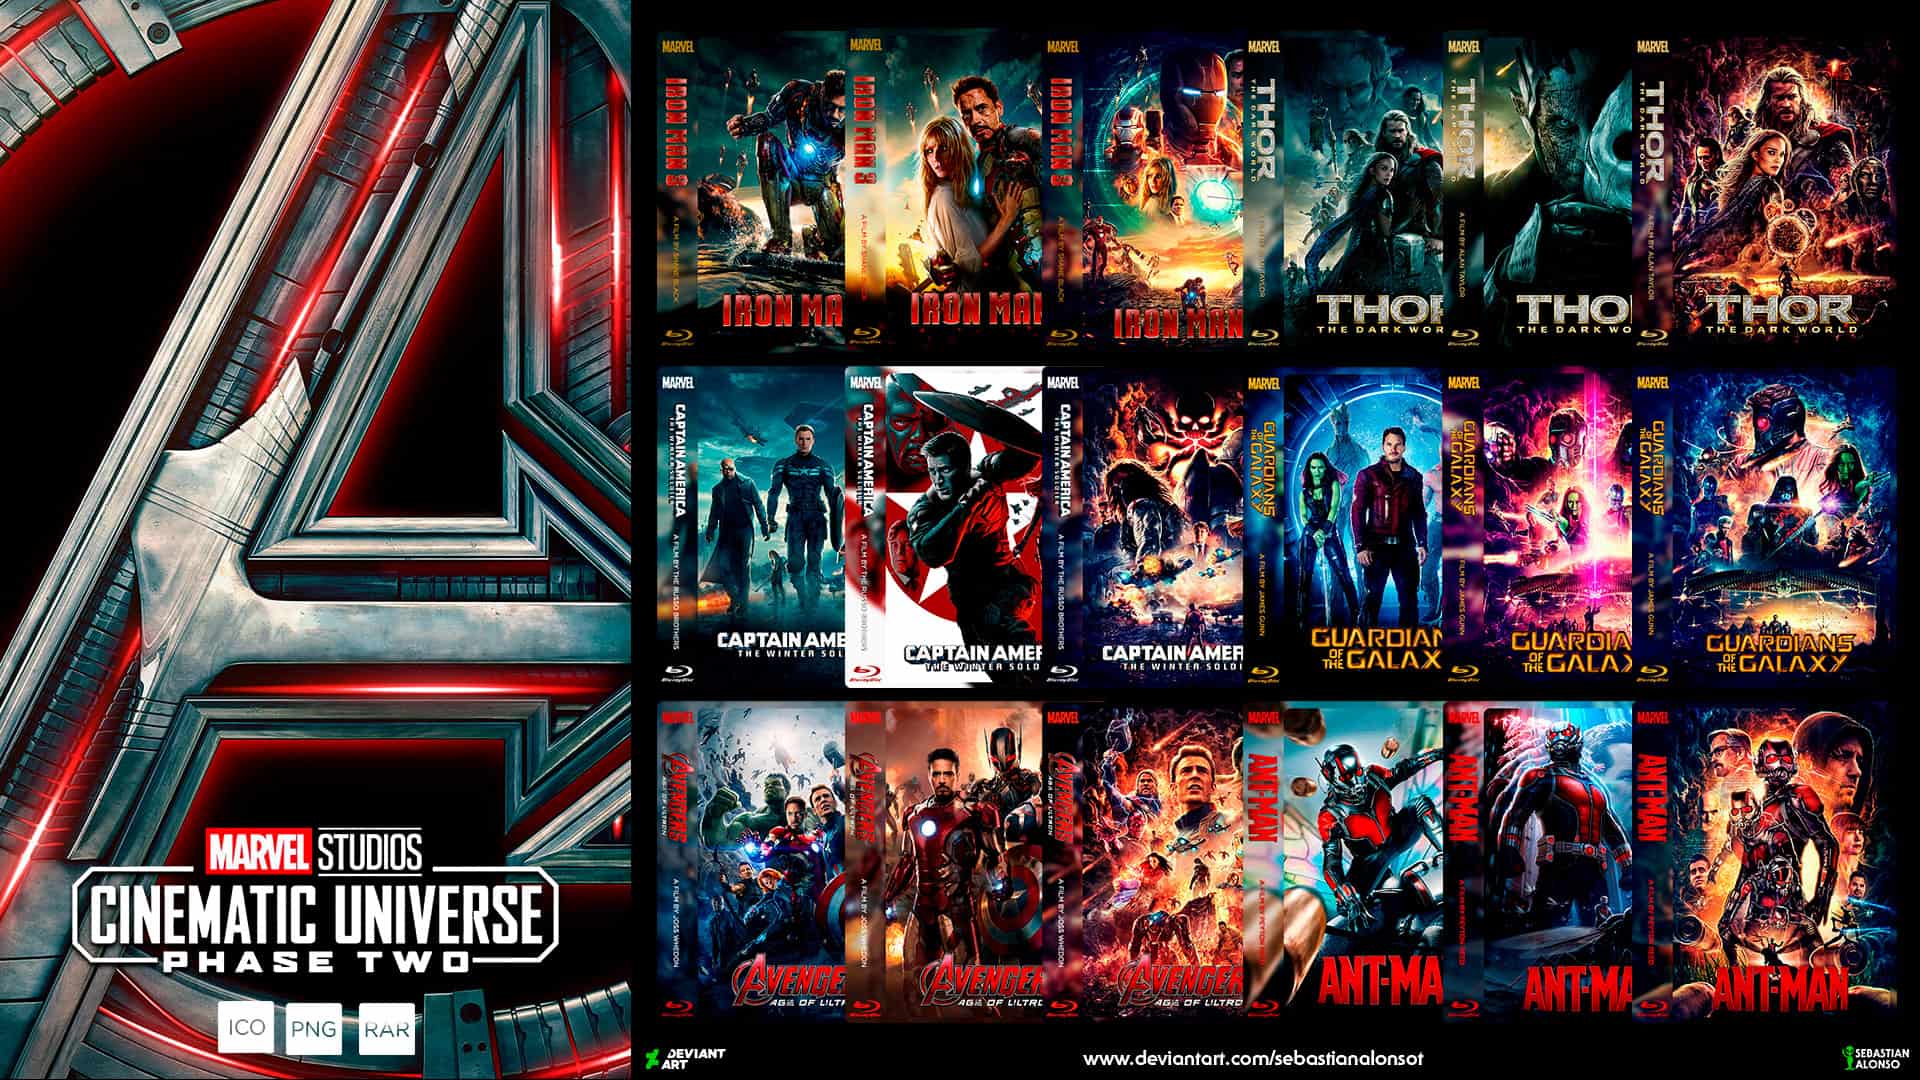 Hướng dẫn xem phim Marvel dành cho người mới bắt đầu